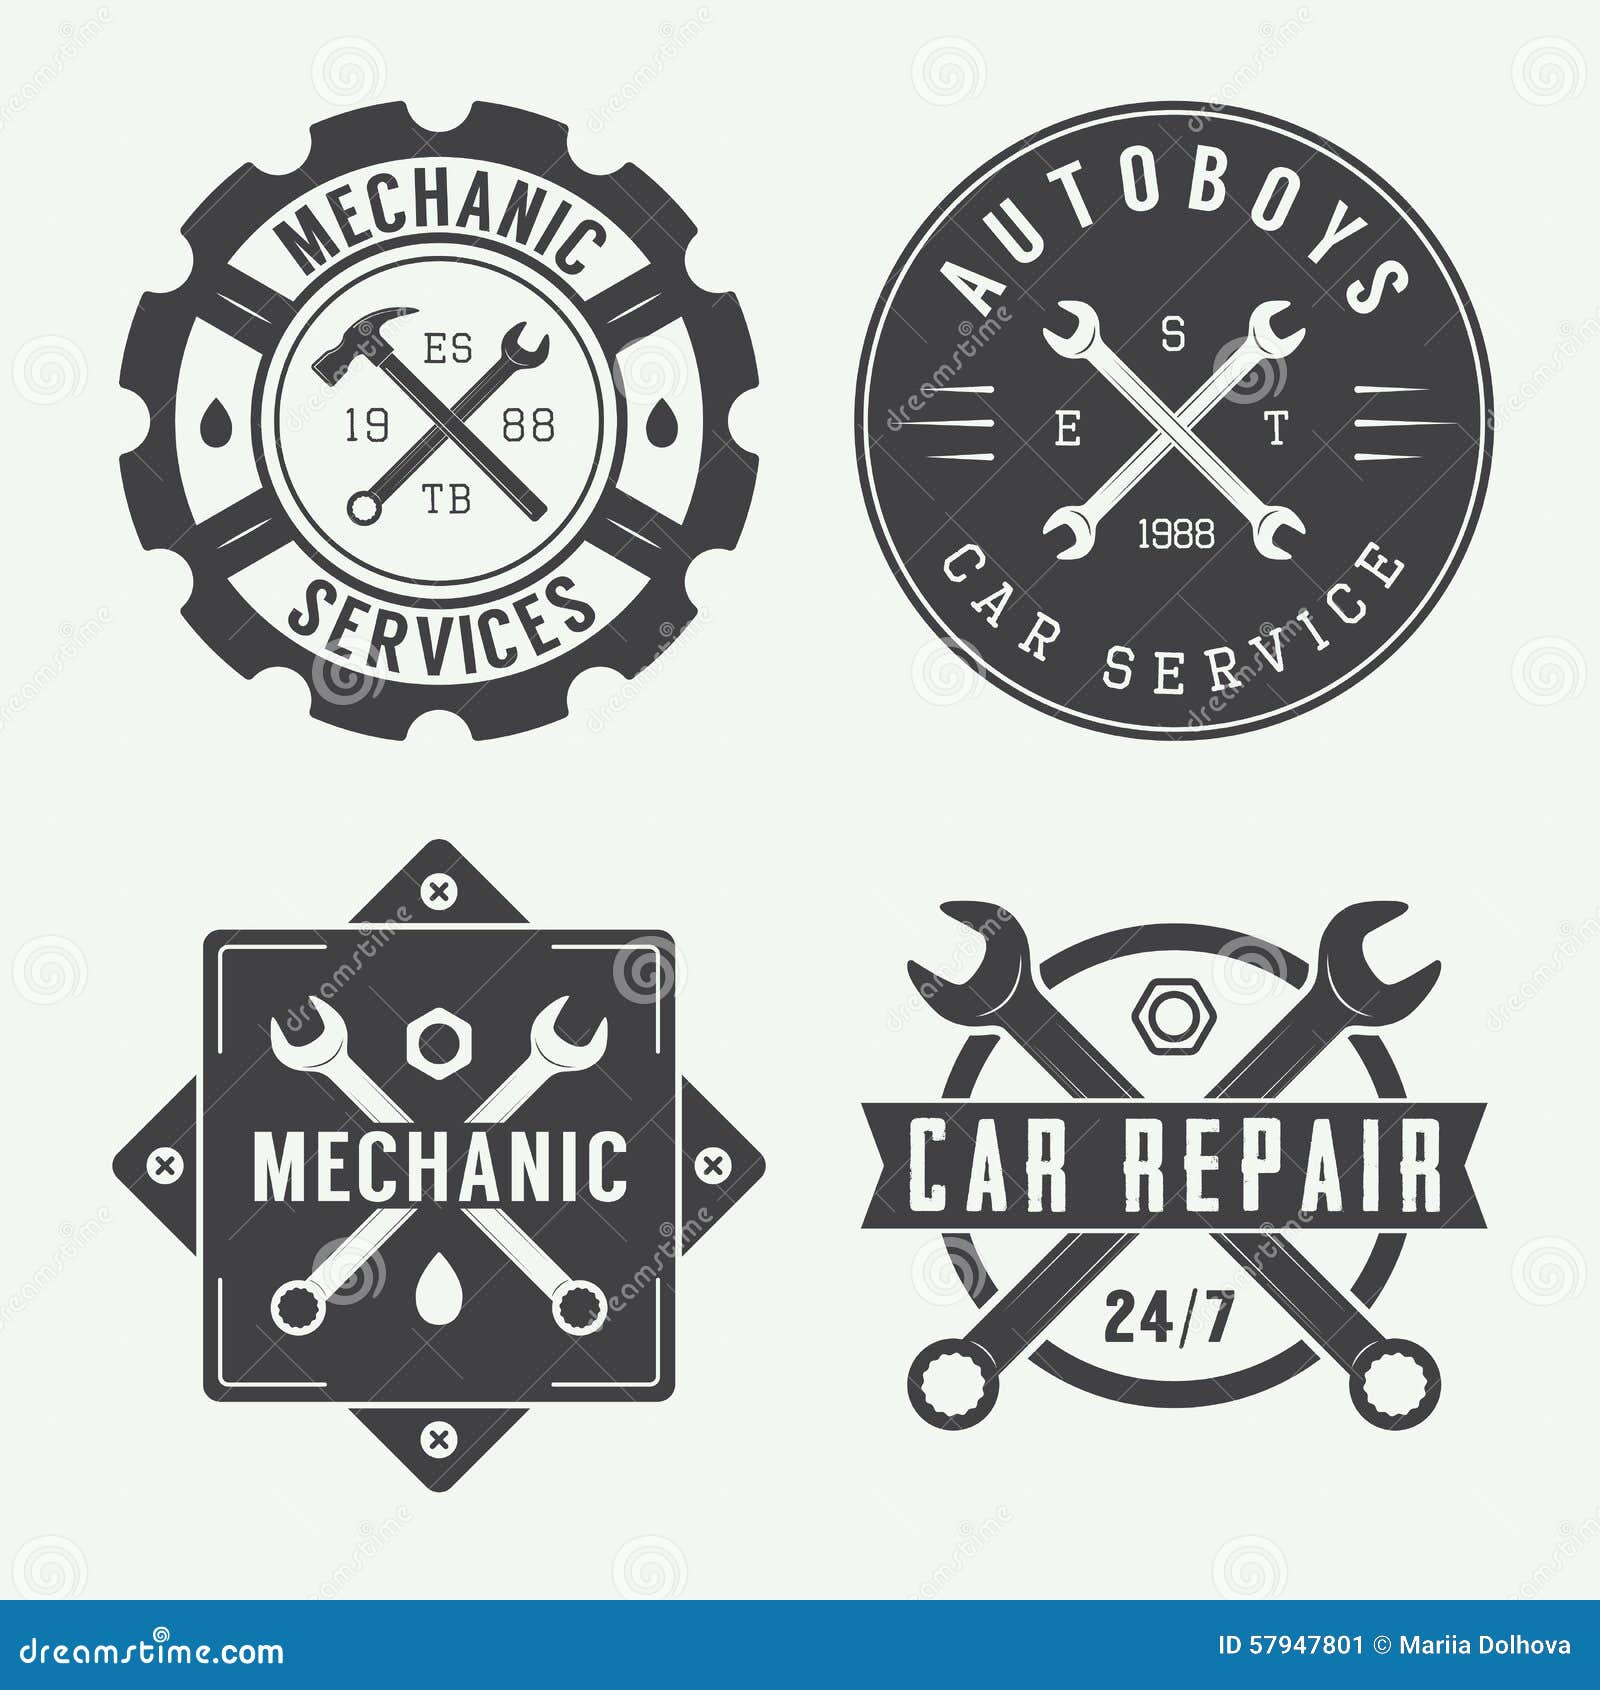 Vintage Mechanic Label, Emblem and Logo. Stock Vector - Illustration of ...